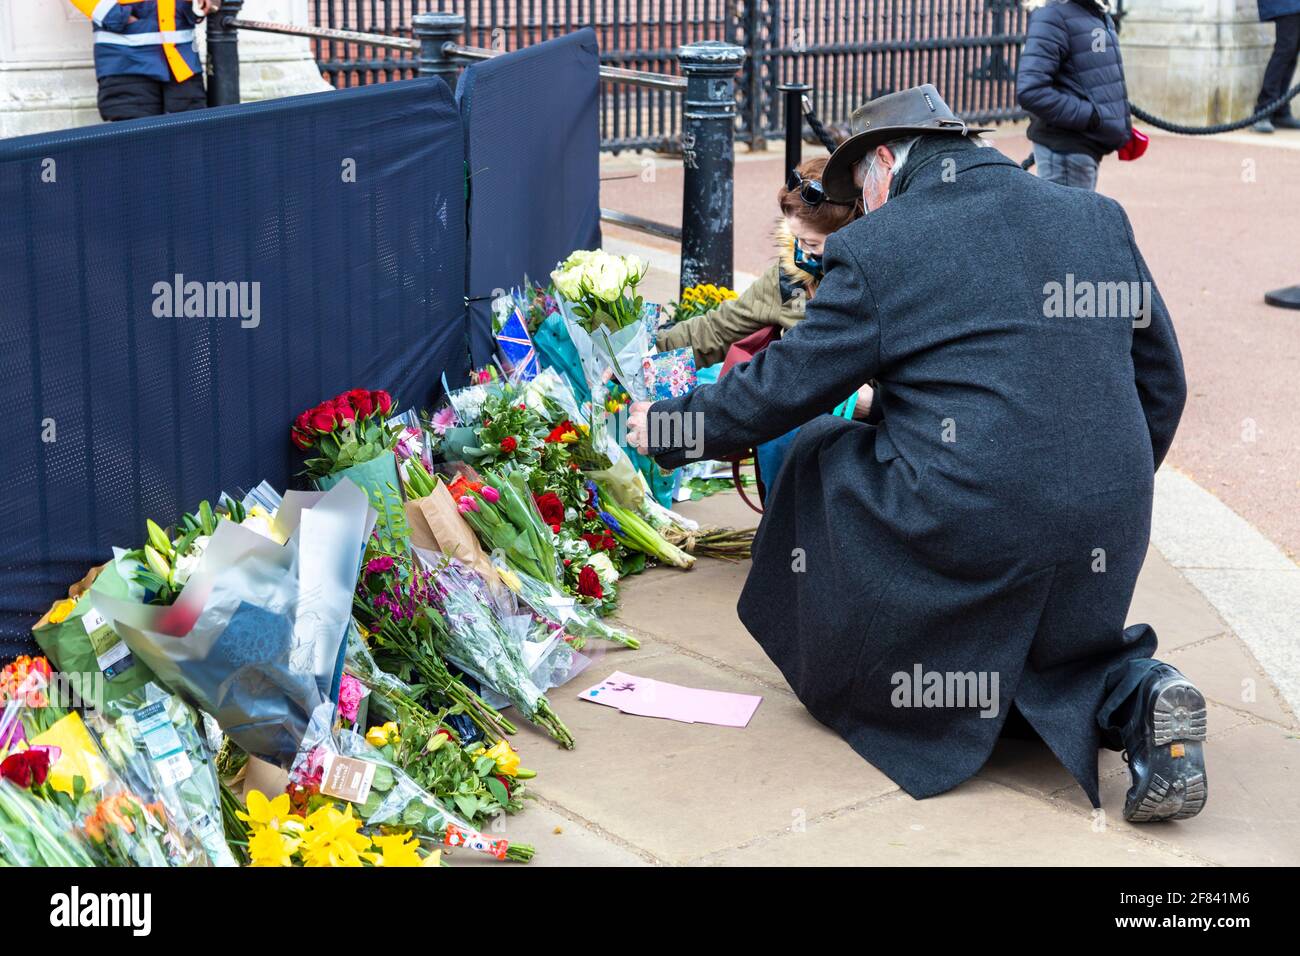 11 avril 2021, Londres, Royaume-Uni - des gens qui jettent des fleurs en hommage au prince Philip, duc d'Édimbourg devant le palais de Buckingham après sa mort le 9 avril Banque D'Images